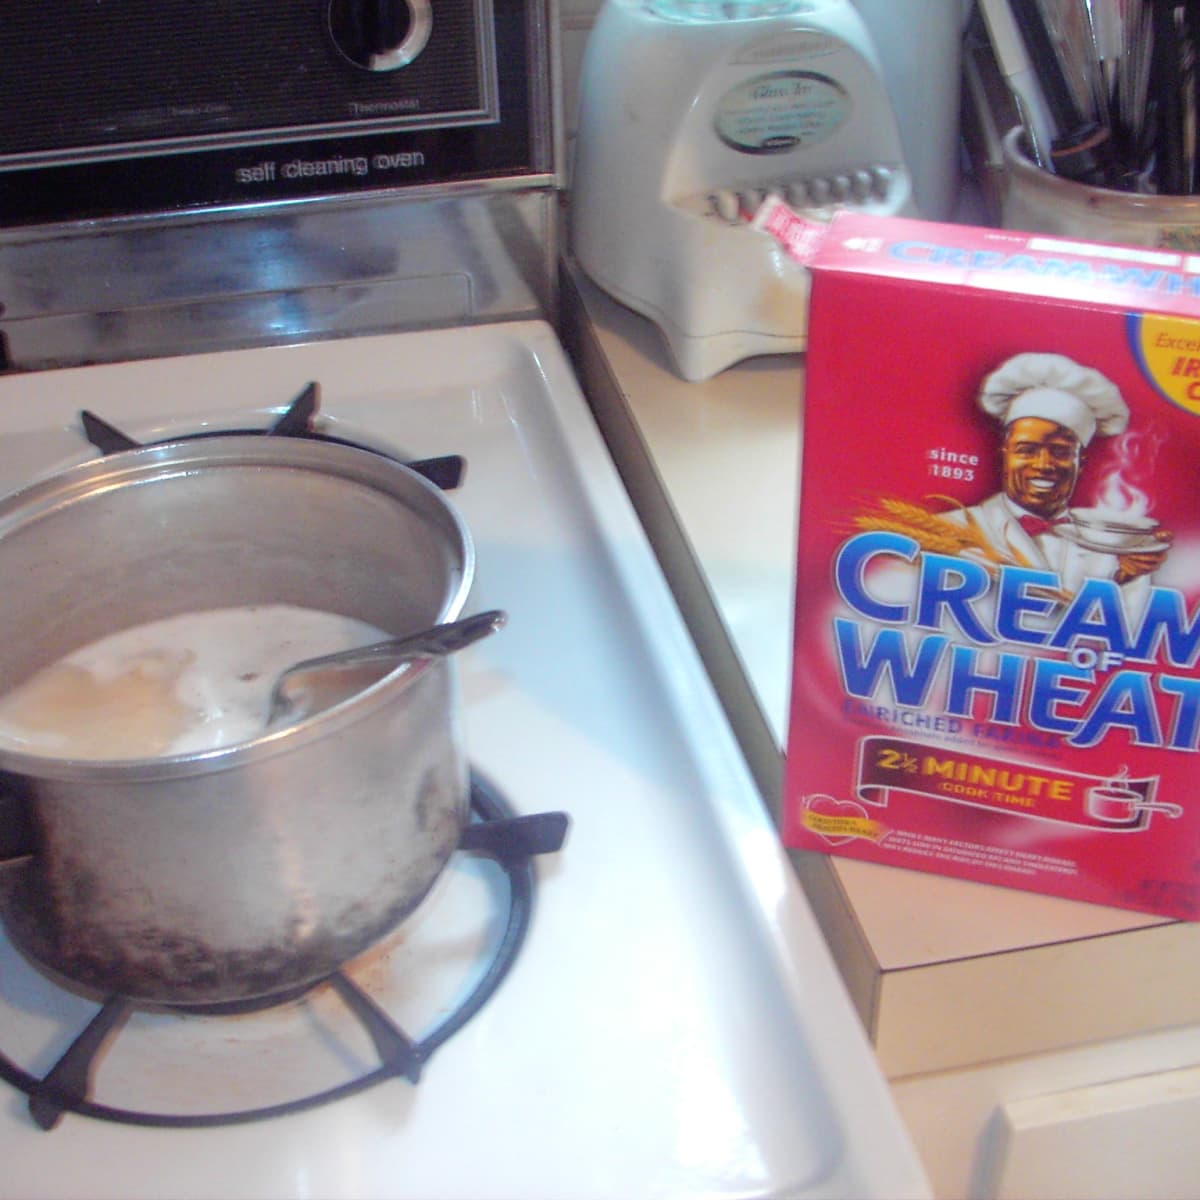 Original 2½ Minute Cream of Wheat